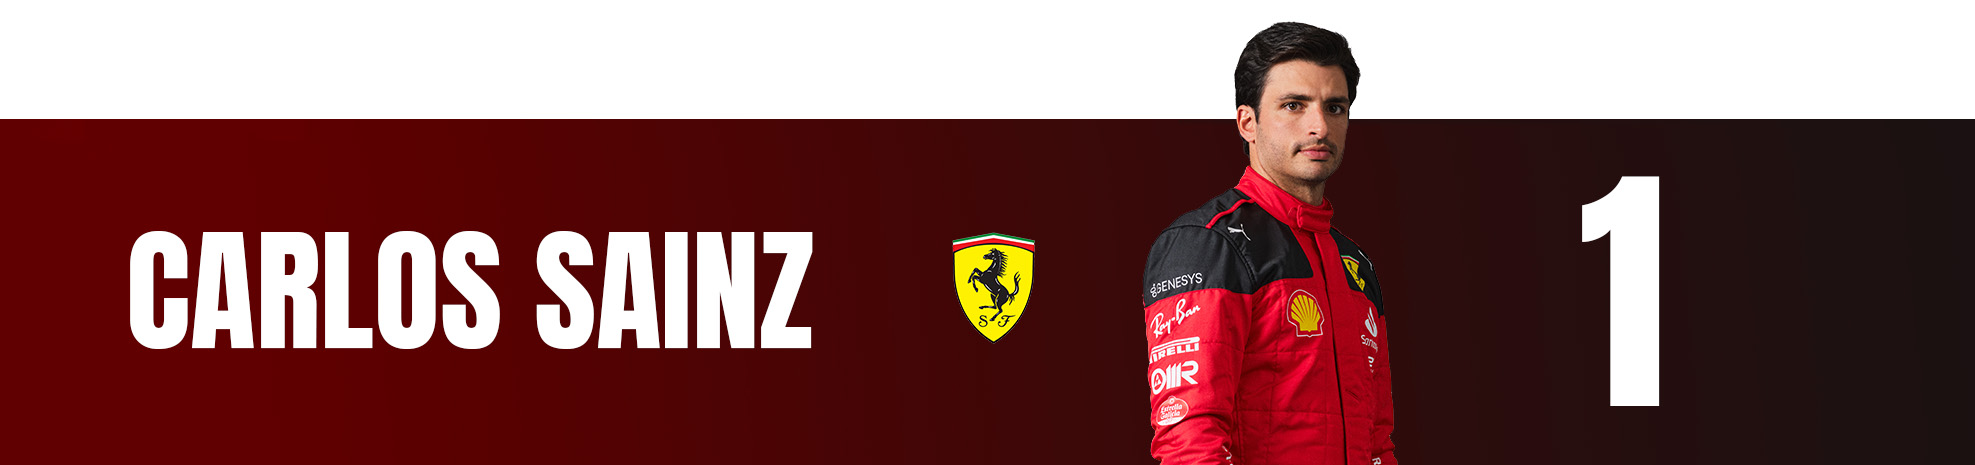 edd straw’s 2023 italian grand prix f1 driver rankings